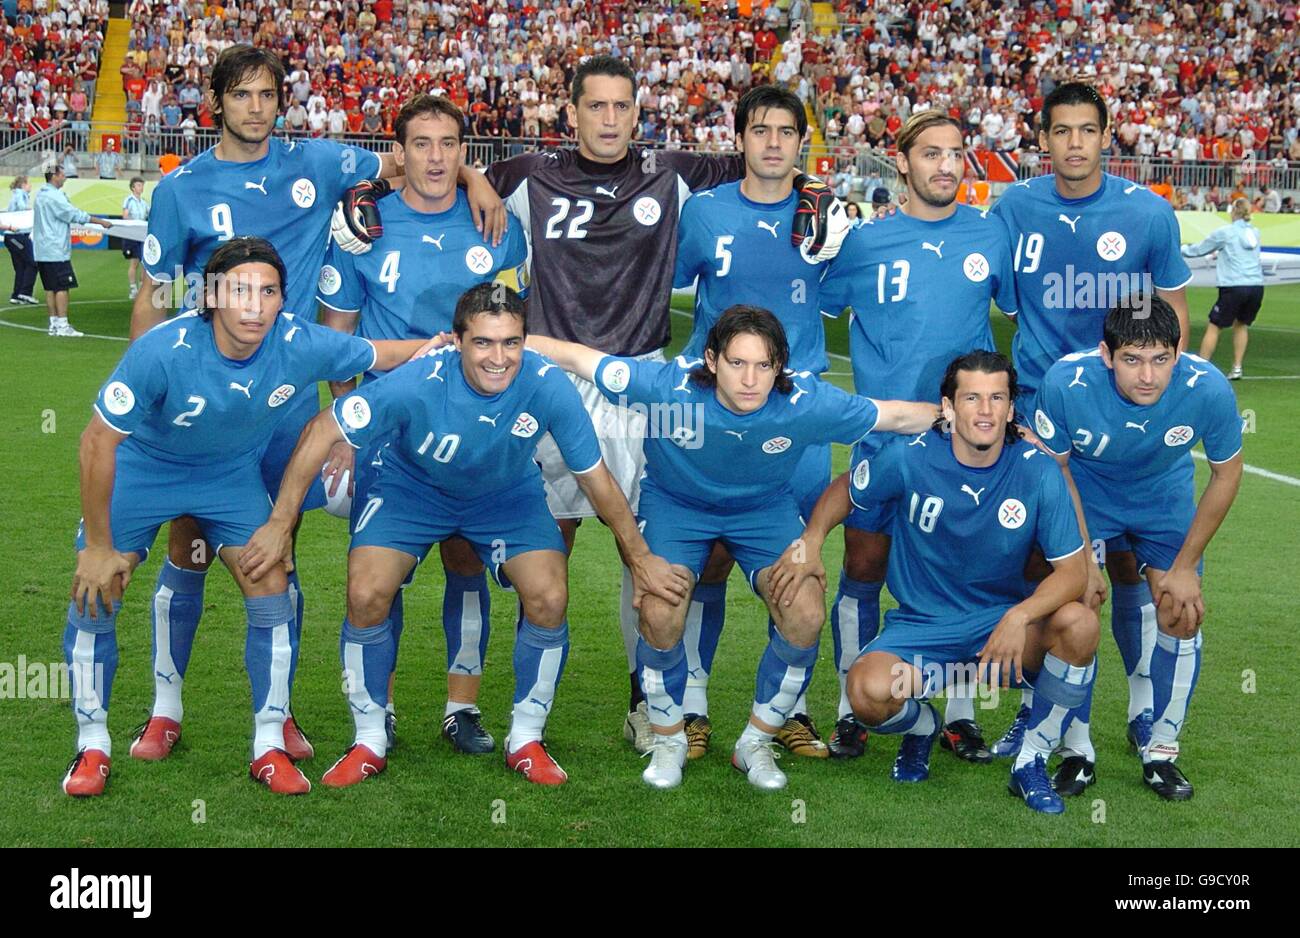 Fútbol - Copa Mundial la FIFA Alemania 2006 - Grupo B - Paraguay contra Trinidad y Tobago - Grupo de equipos Fotografía de stock - Alamy